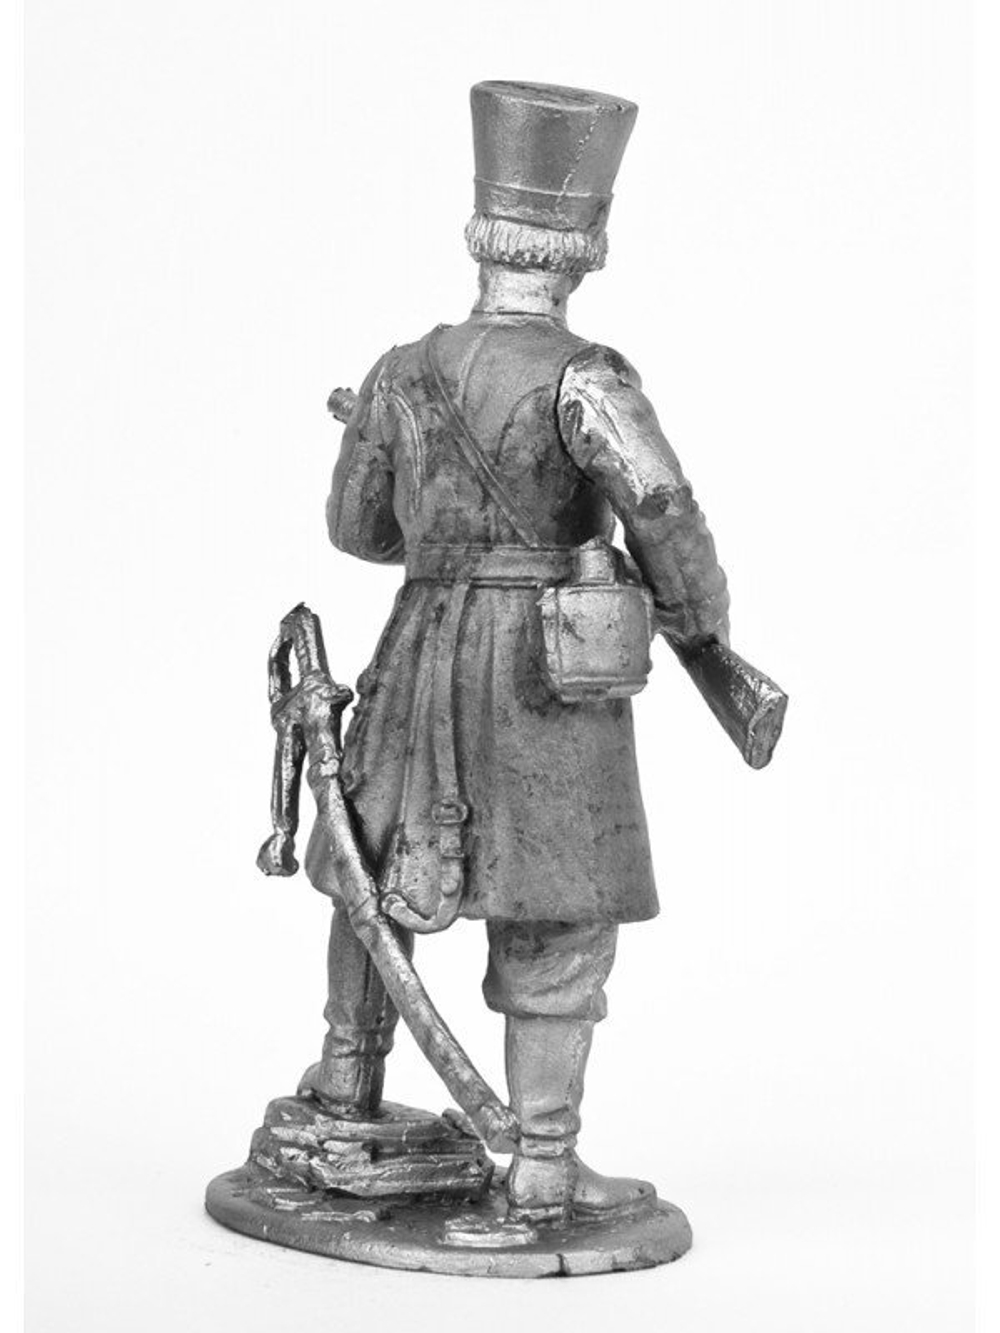 Оловянный солдатик Ратник конного полка Пензенского ополчения, 1812 г.